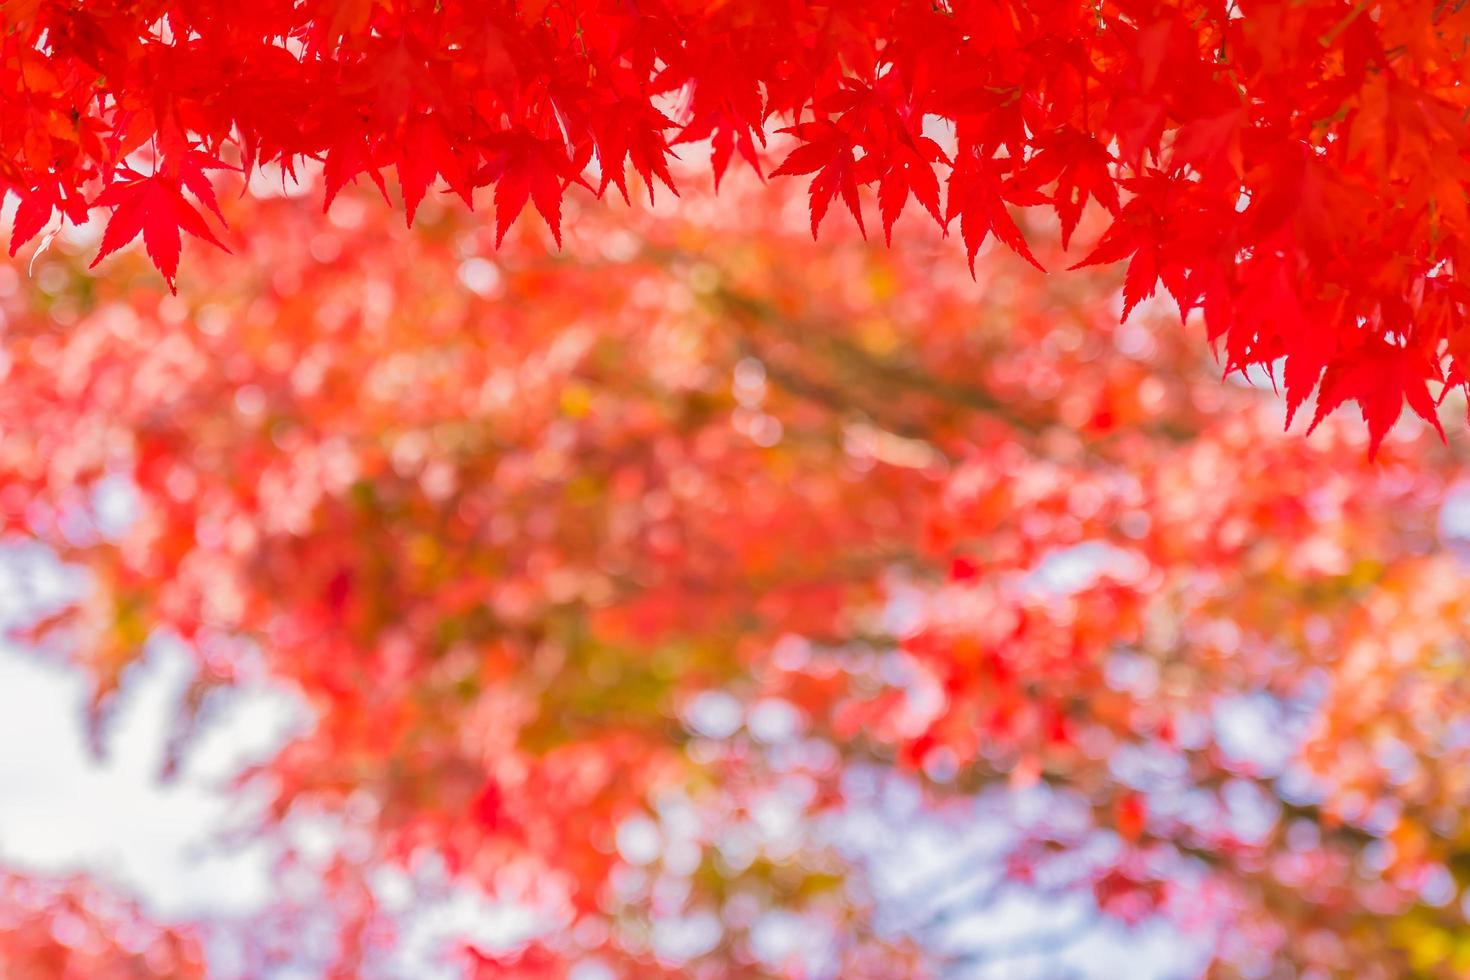 belles feuilles d'érable rouge photo